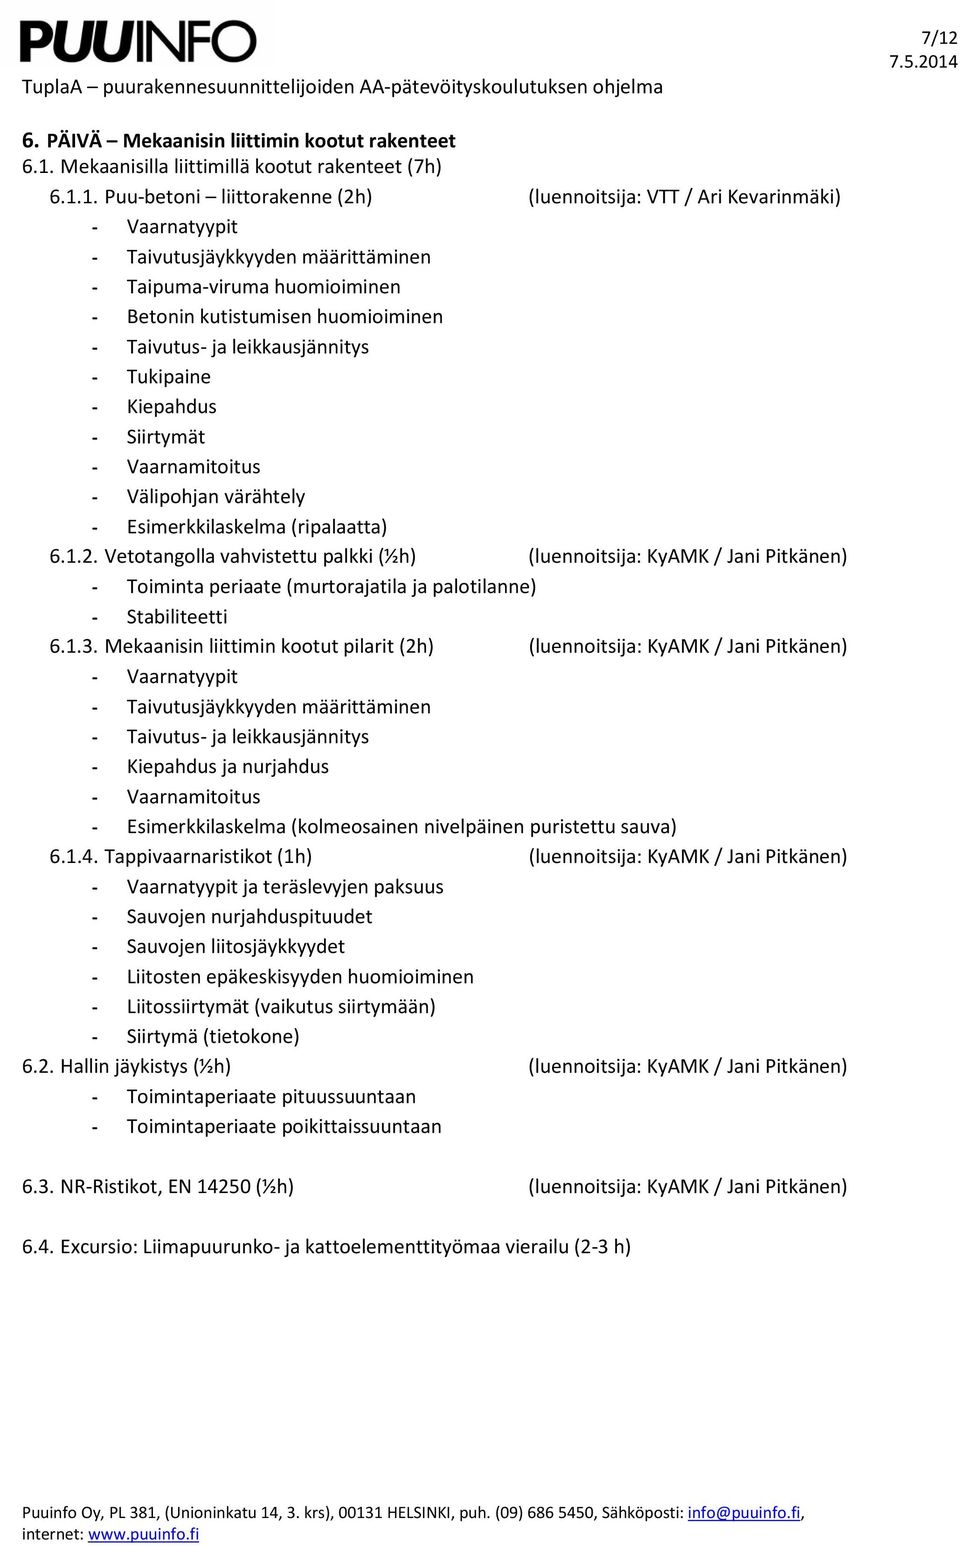 värähtely - Esimerkkilaskelma (ripalaatta) 6.1.2. Vetotangolla vahvistettu palkki (½h) (luennoitsija: KyAMK / Jani Pitkänen) - Toiminta periaate (murtorajatila ja palotilanne) - Stabiliteetti 6.1.3.